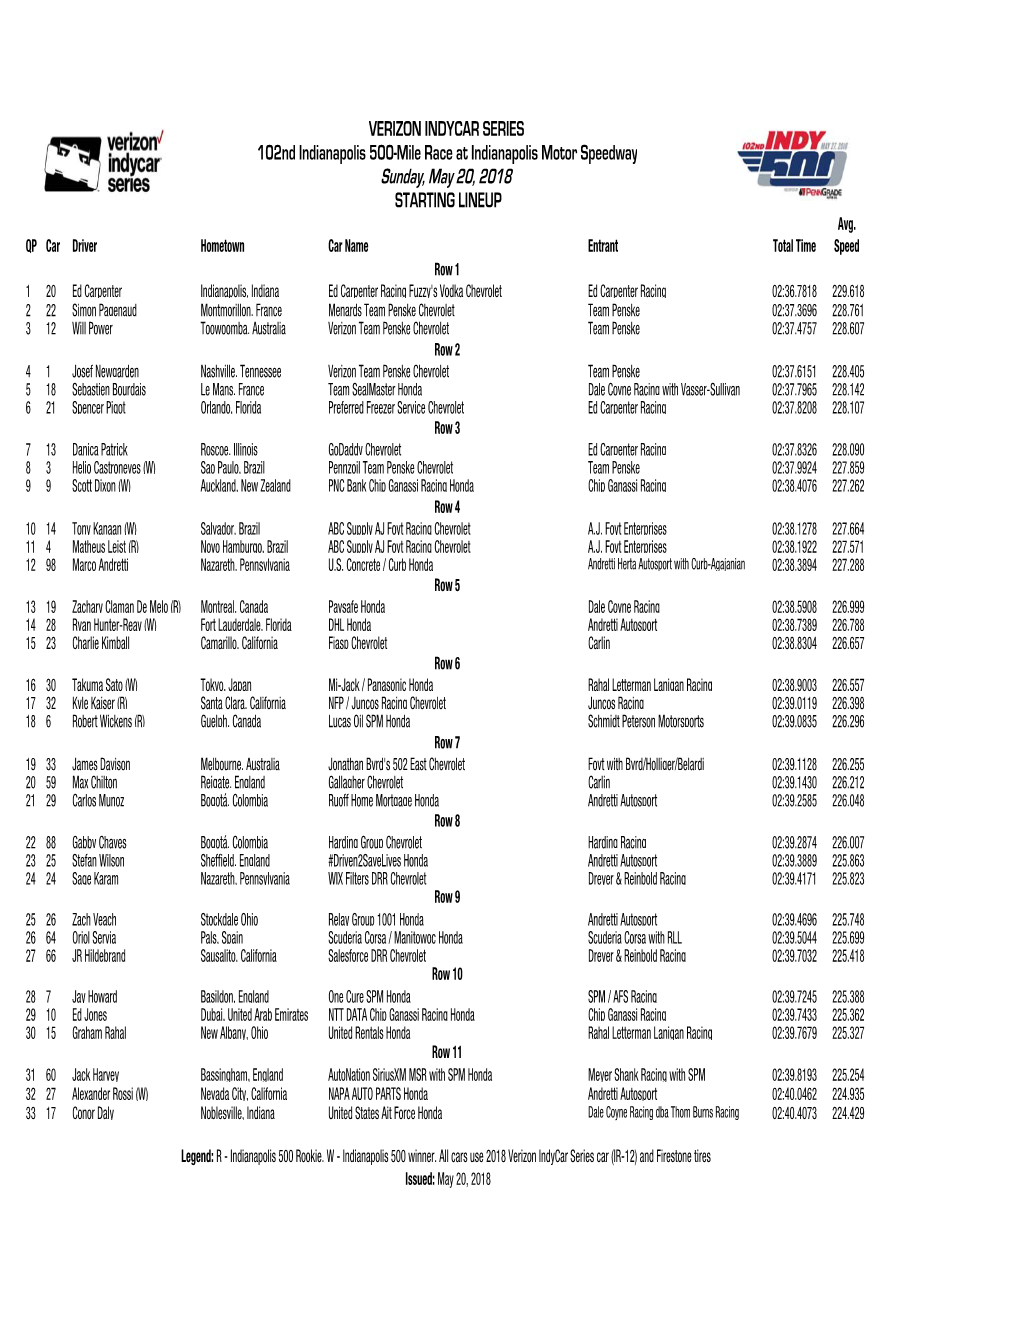 Indy 500 Starting Lineup 5-20.Xlsx